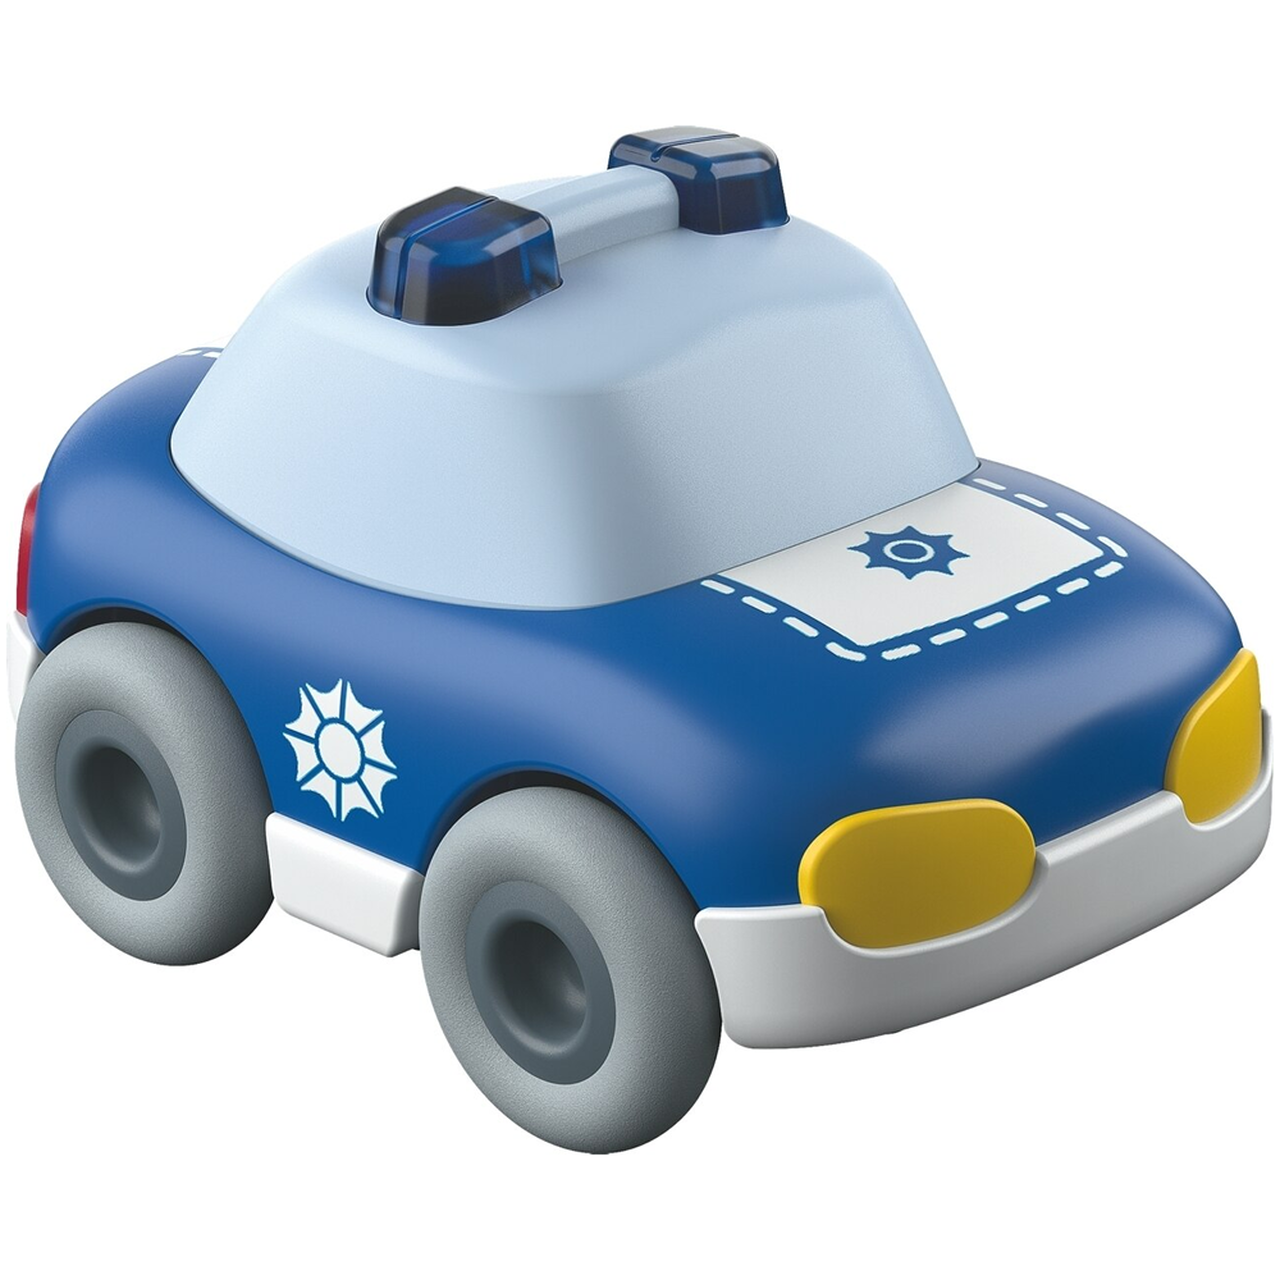 Toys: Kullerbu Police Car